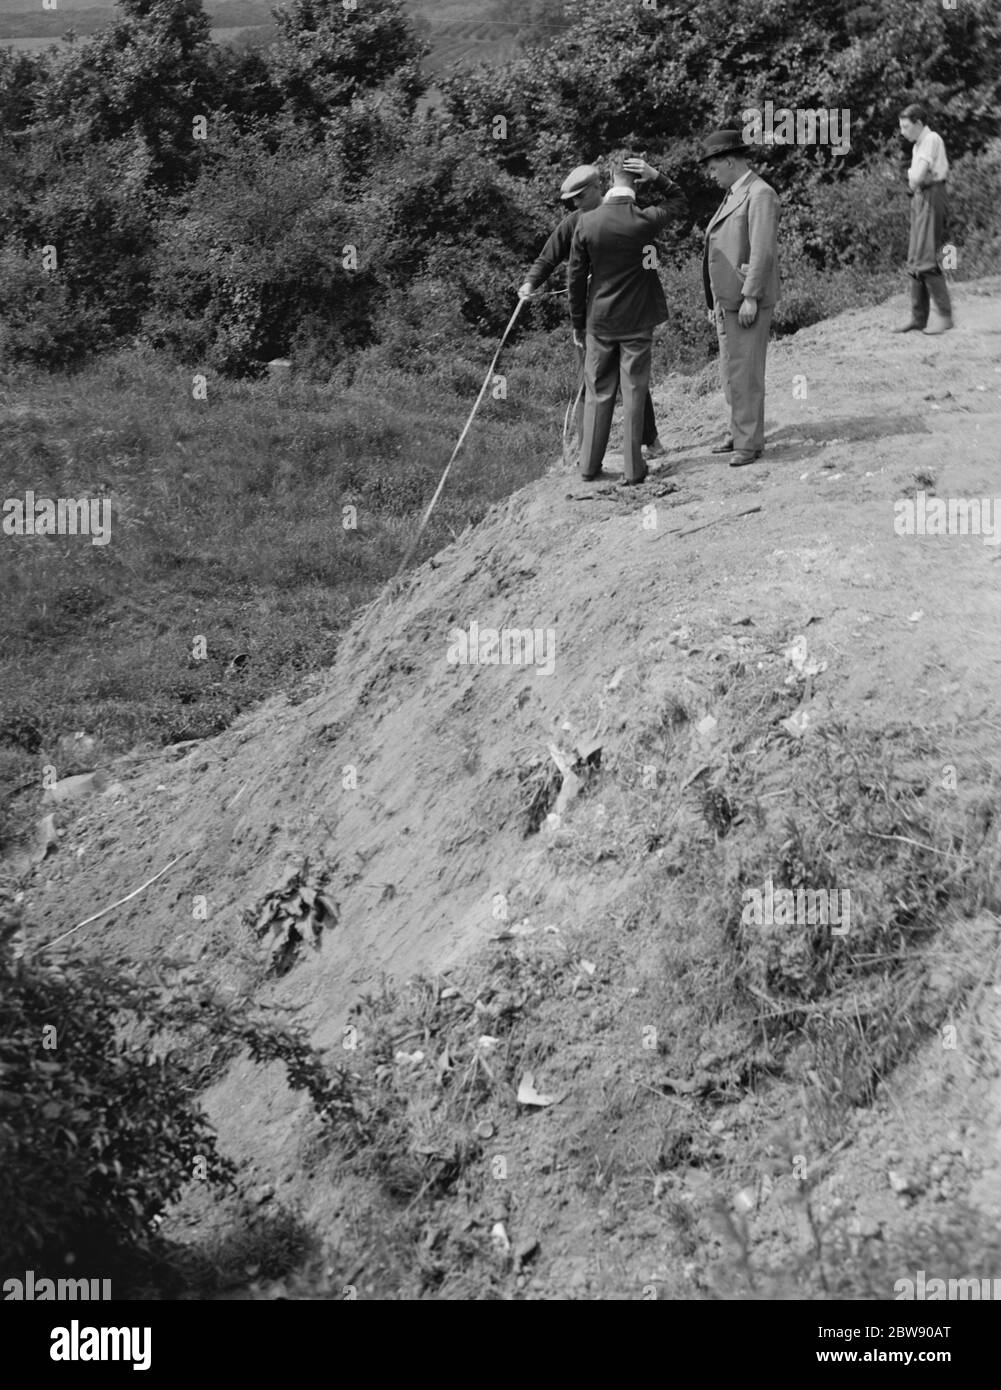 Männer, die Messungen an der Stelle eines LKW-Crash, der in Darenth, Kent passiert. Schutt vom Absturz kann noch entlang des Bodens gesehen werden. 31 Mai 1937 Stockfoto